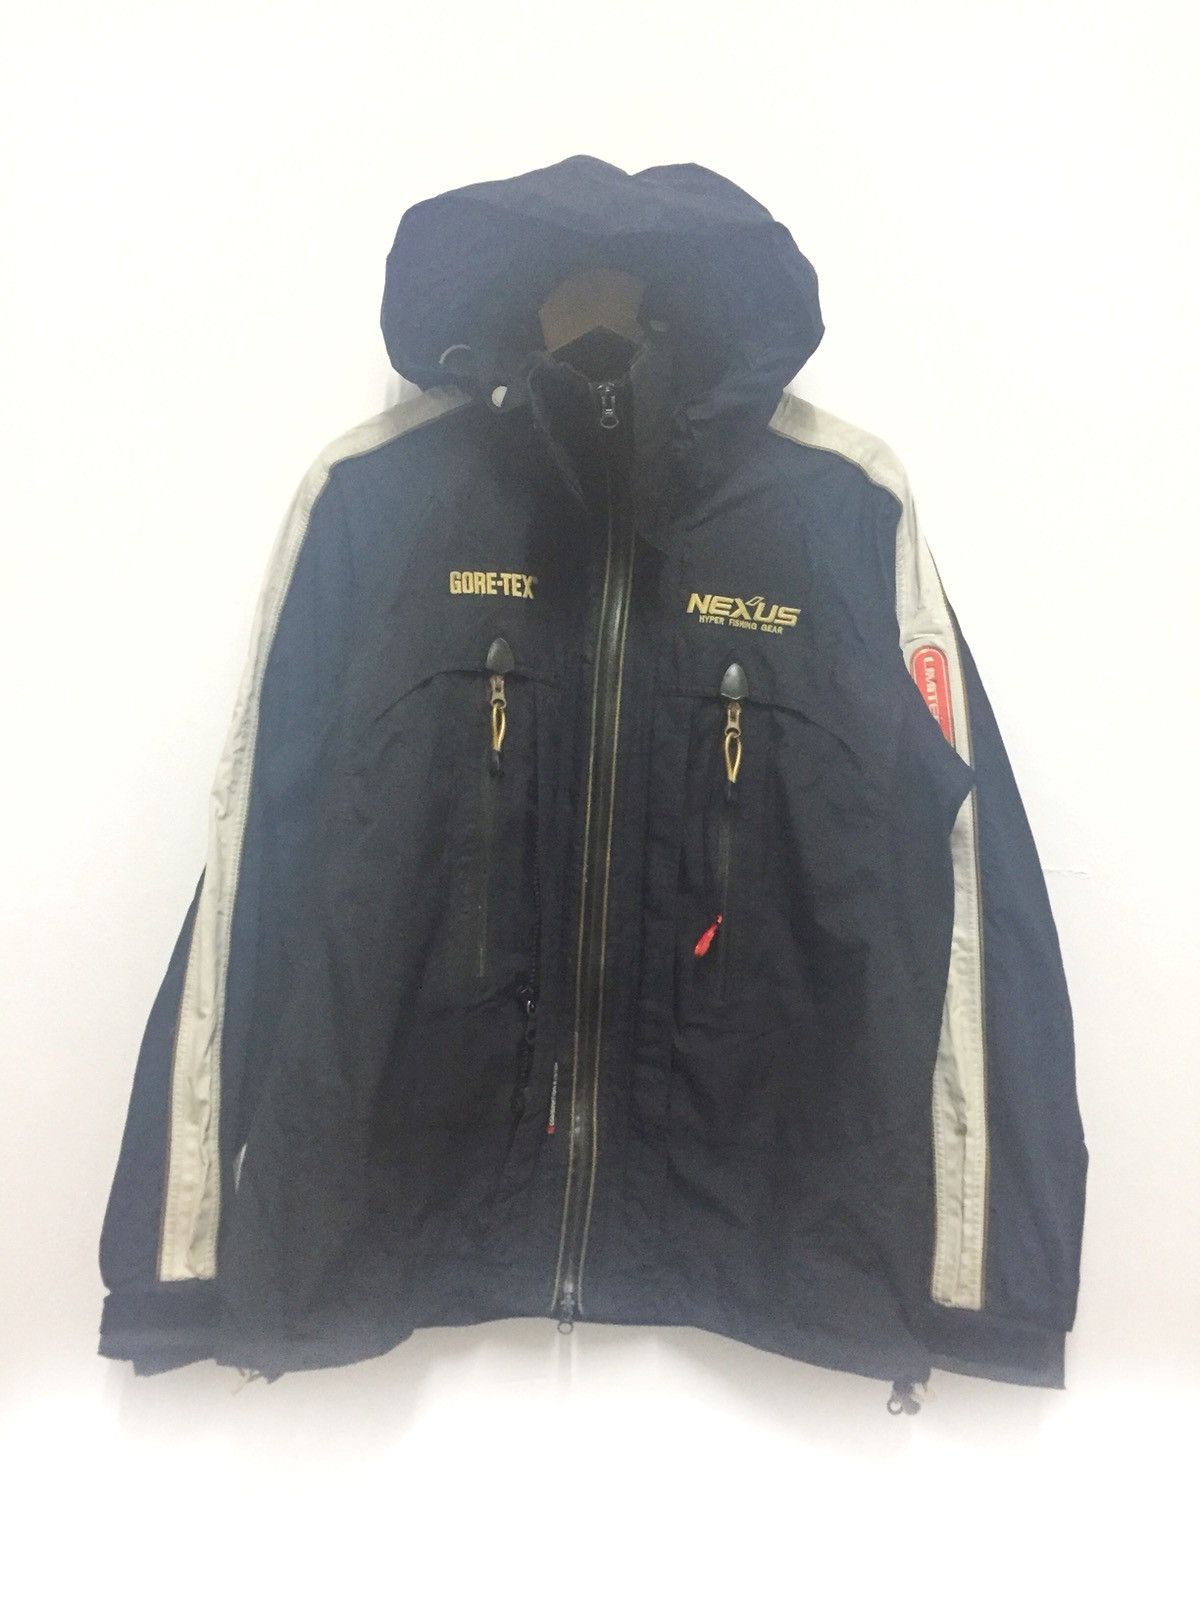 Buy Vintage Nexus Hyper Fishing Gear Shimano Hoodie Jacket